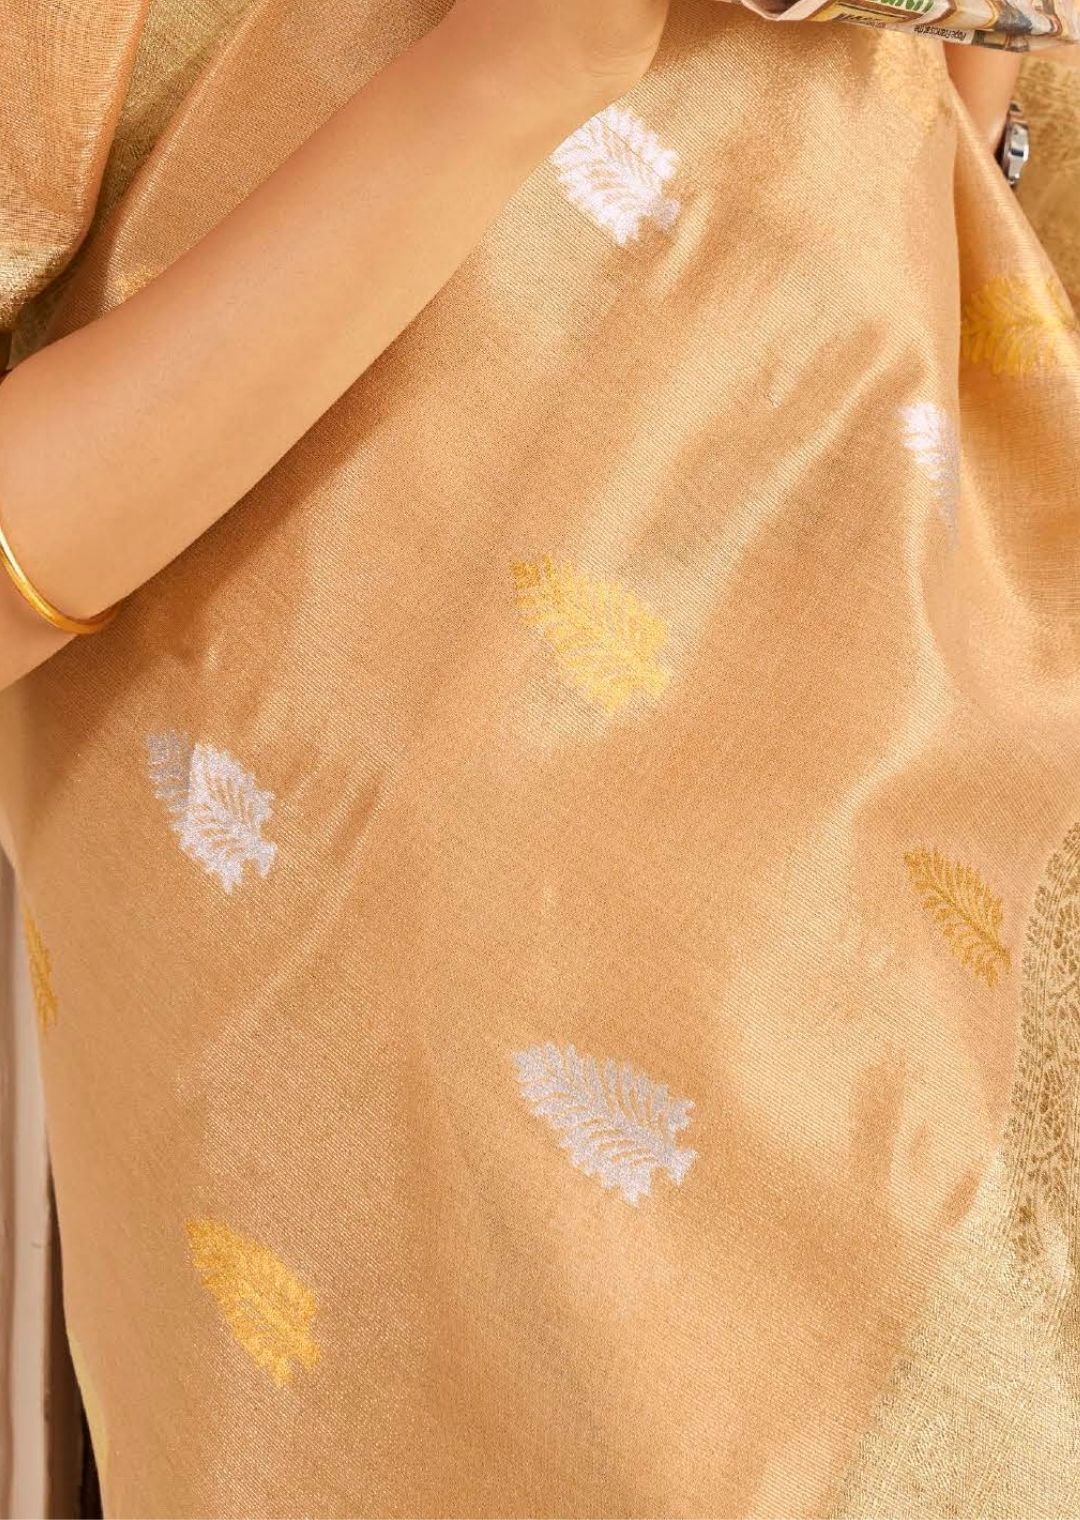 Golden Peach Zari Woven Pure Handloom Linen Silk Saree